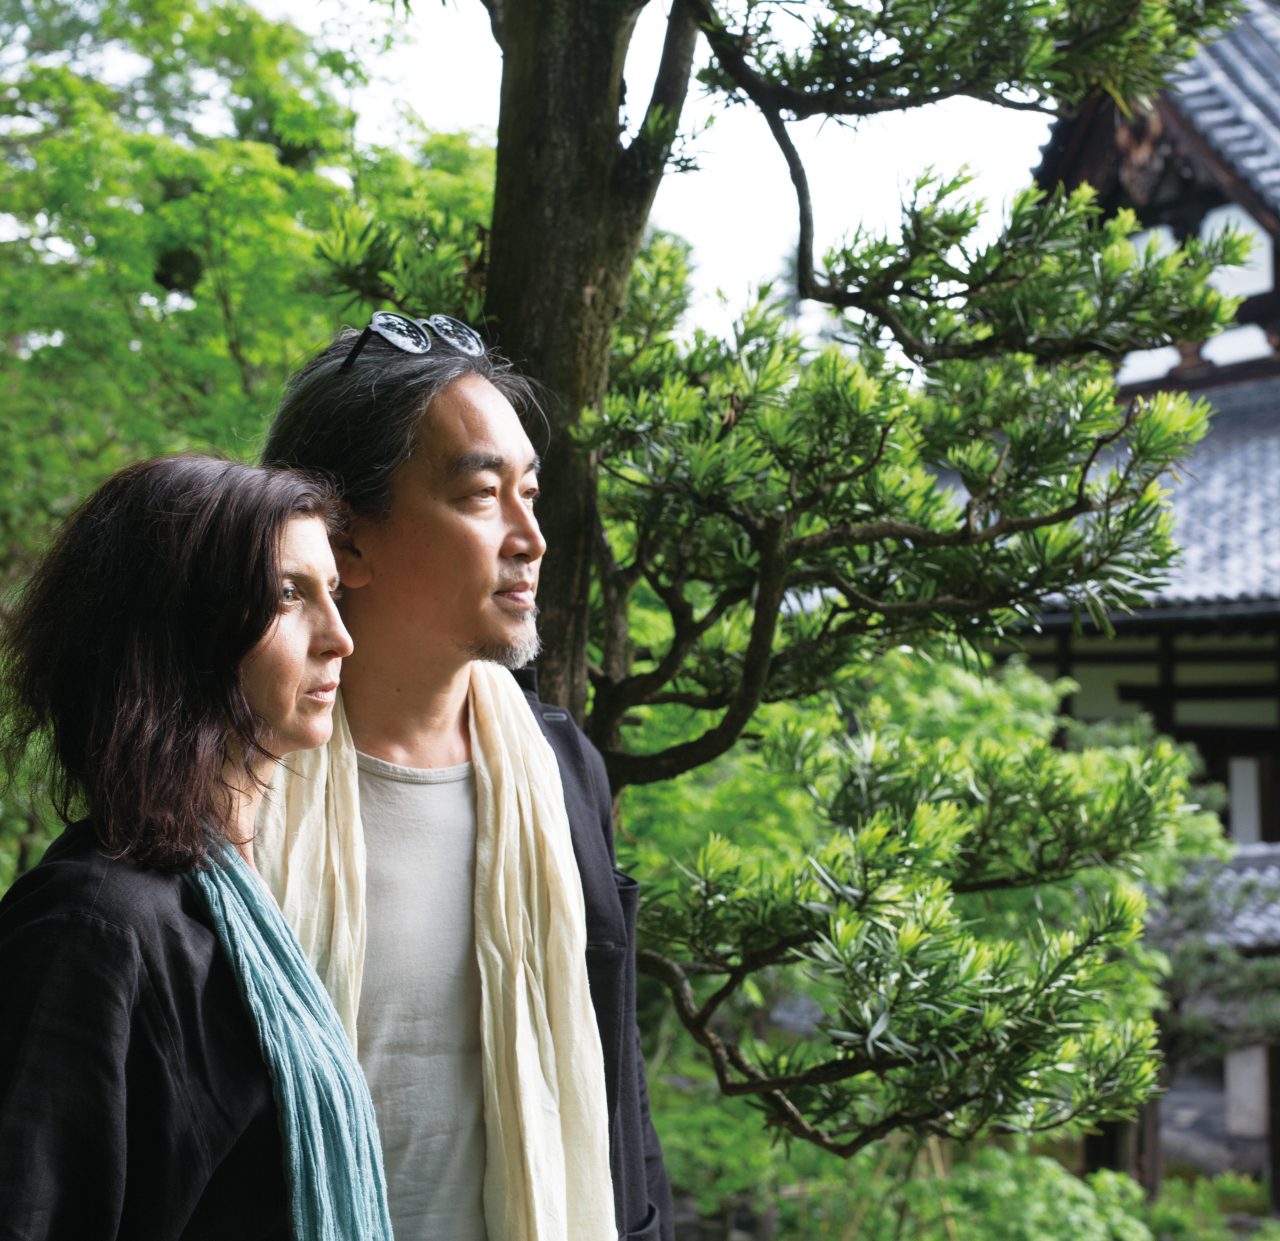 ルシール・レイボーズさん / 仲西祐介さん 京都という街から日本の写真文化を変えていきたい | SIGMA meets SEEKERS | SEIN  | SIGMA